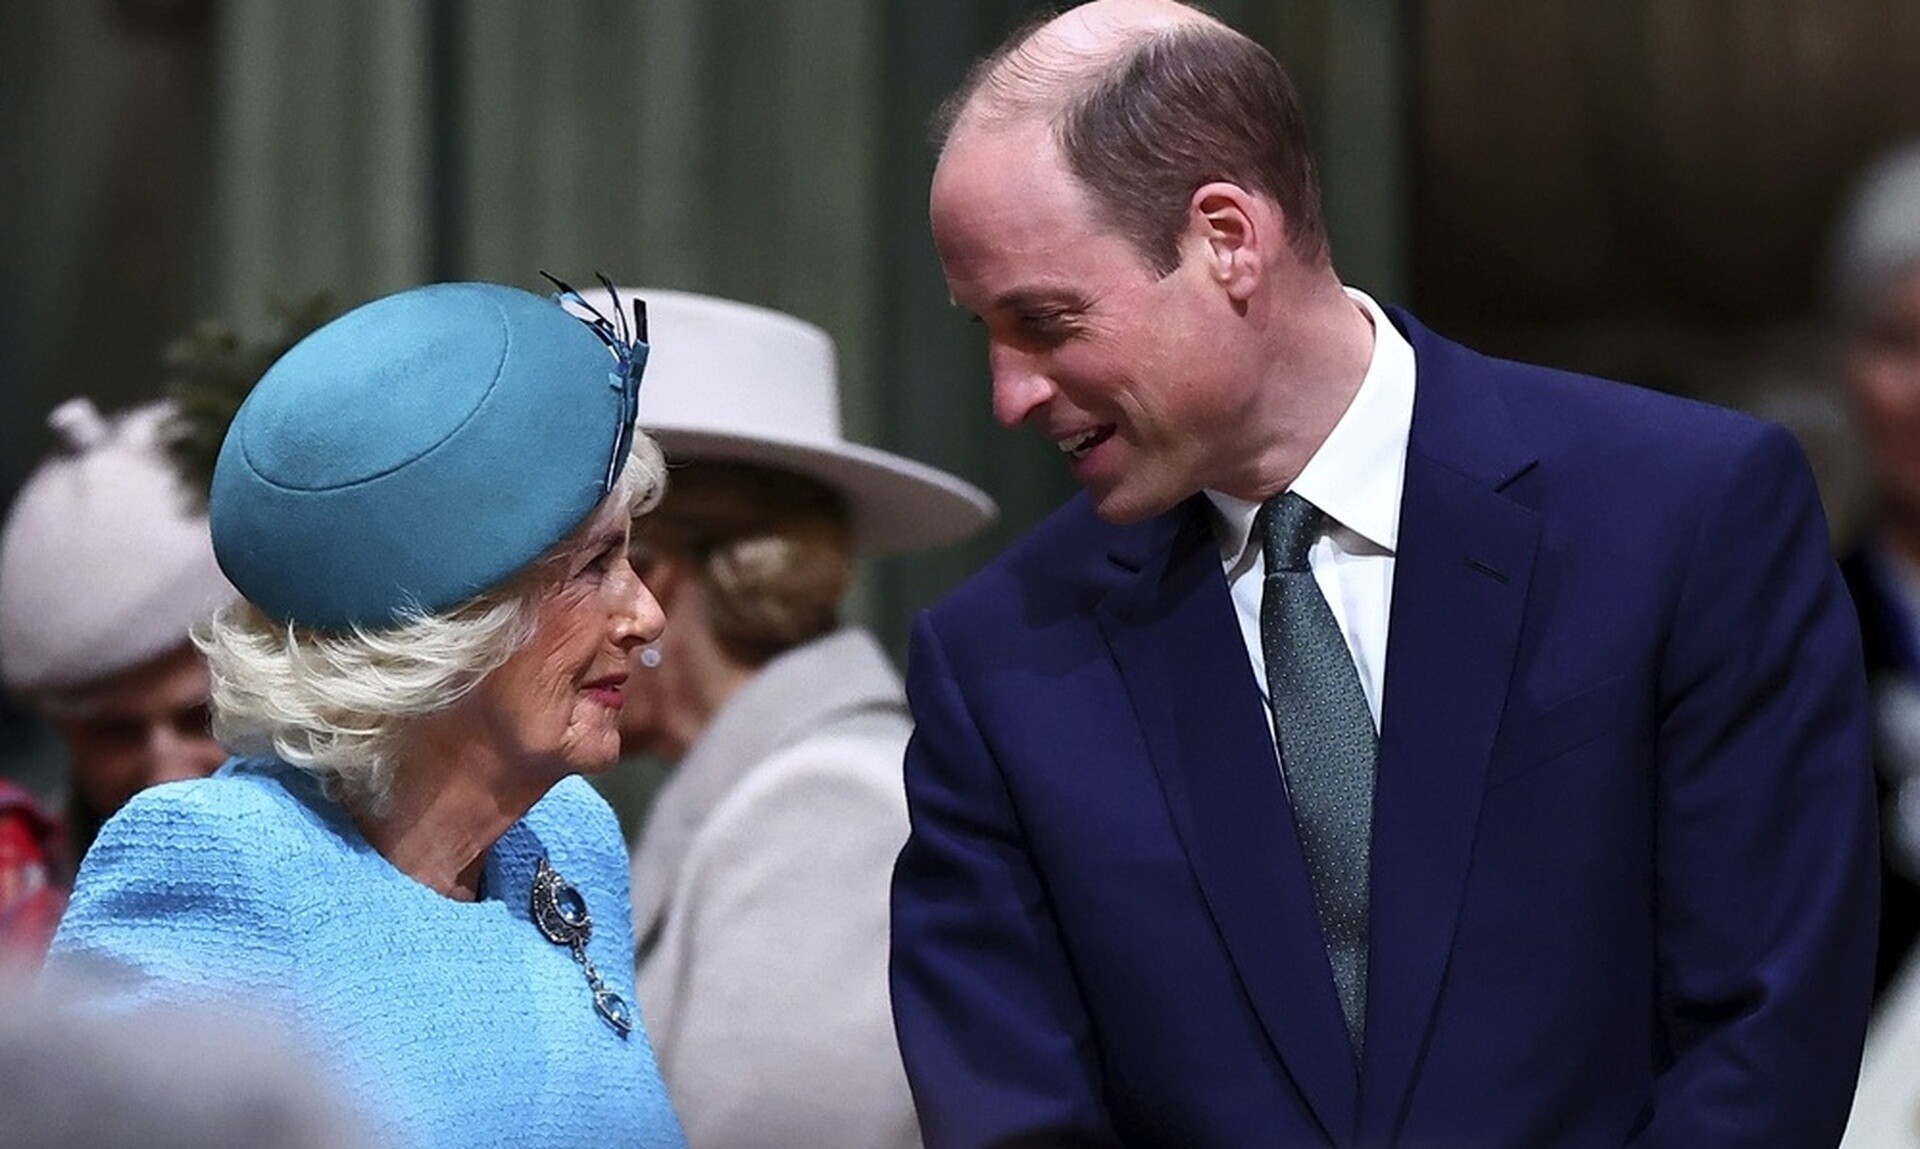 Πρίγκιπας Ουίλιαμ: Ο απίθανος δεσμός του με τη βασίλισσα Καμίλα - Τι είναι εκείνο που τους ενώνει